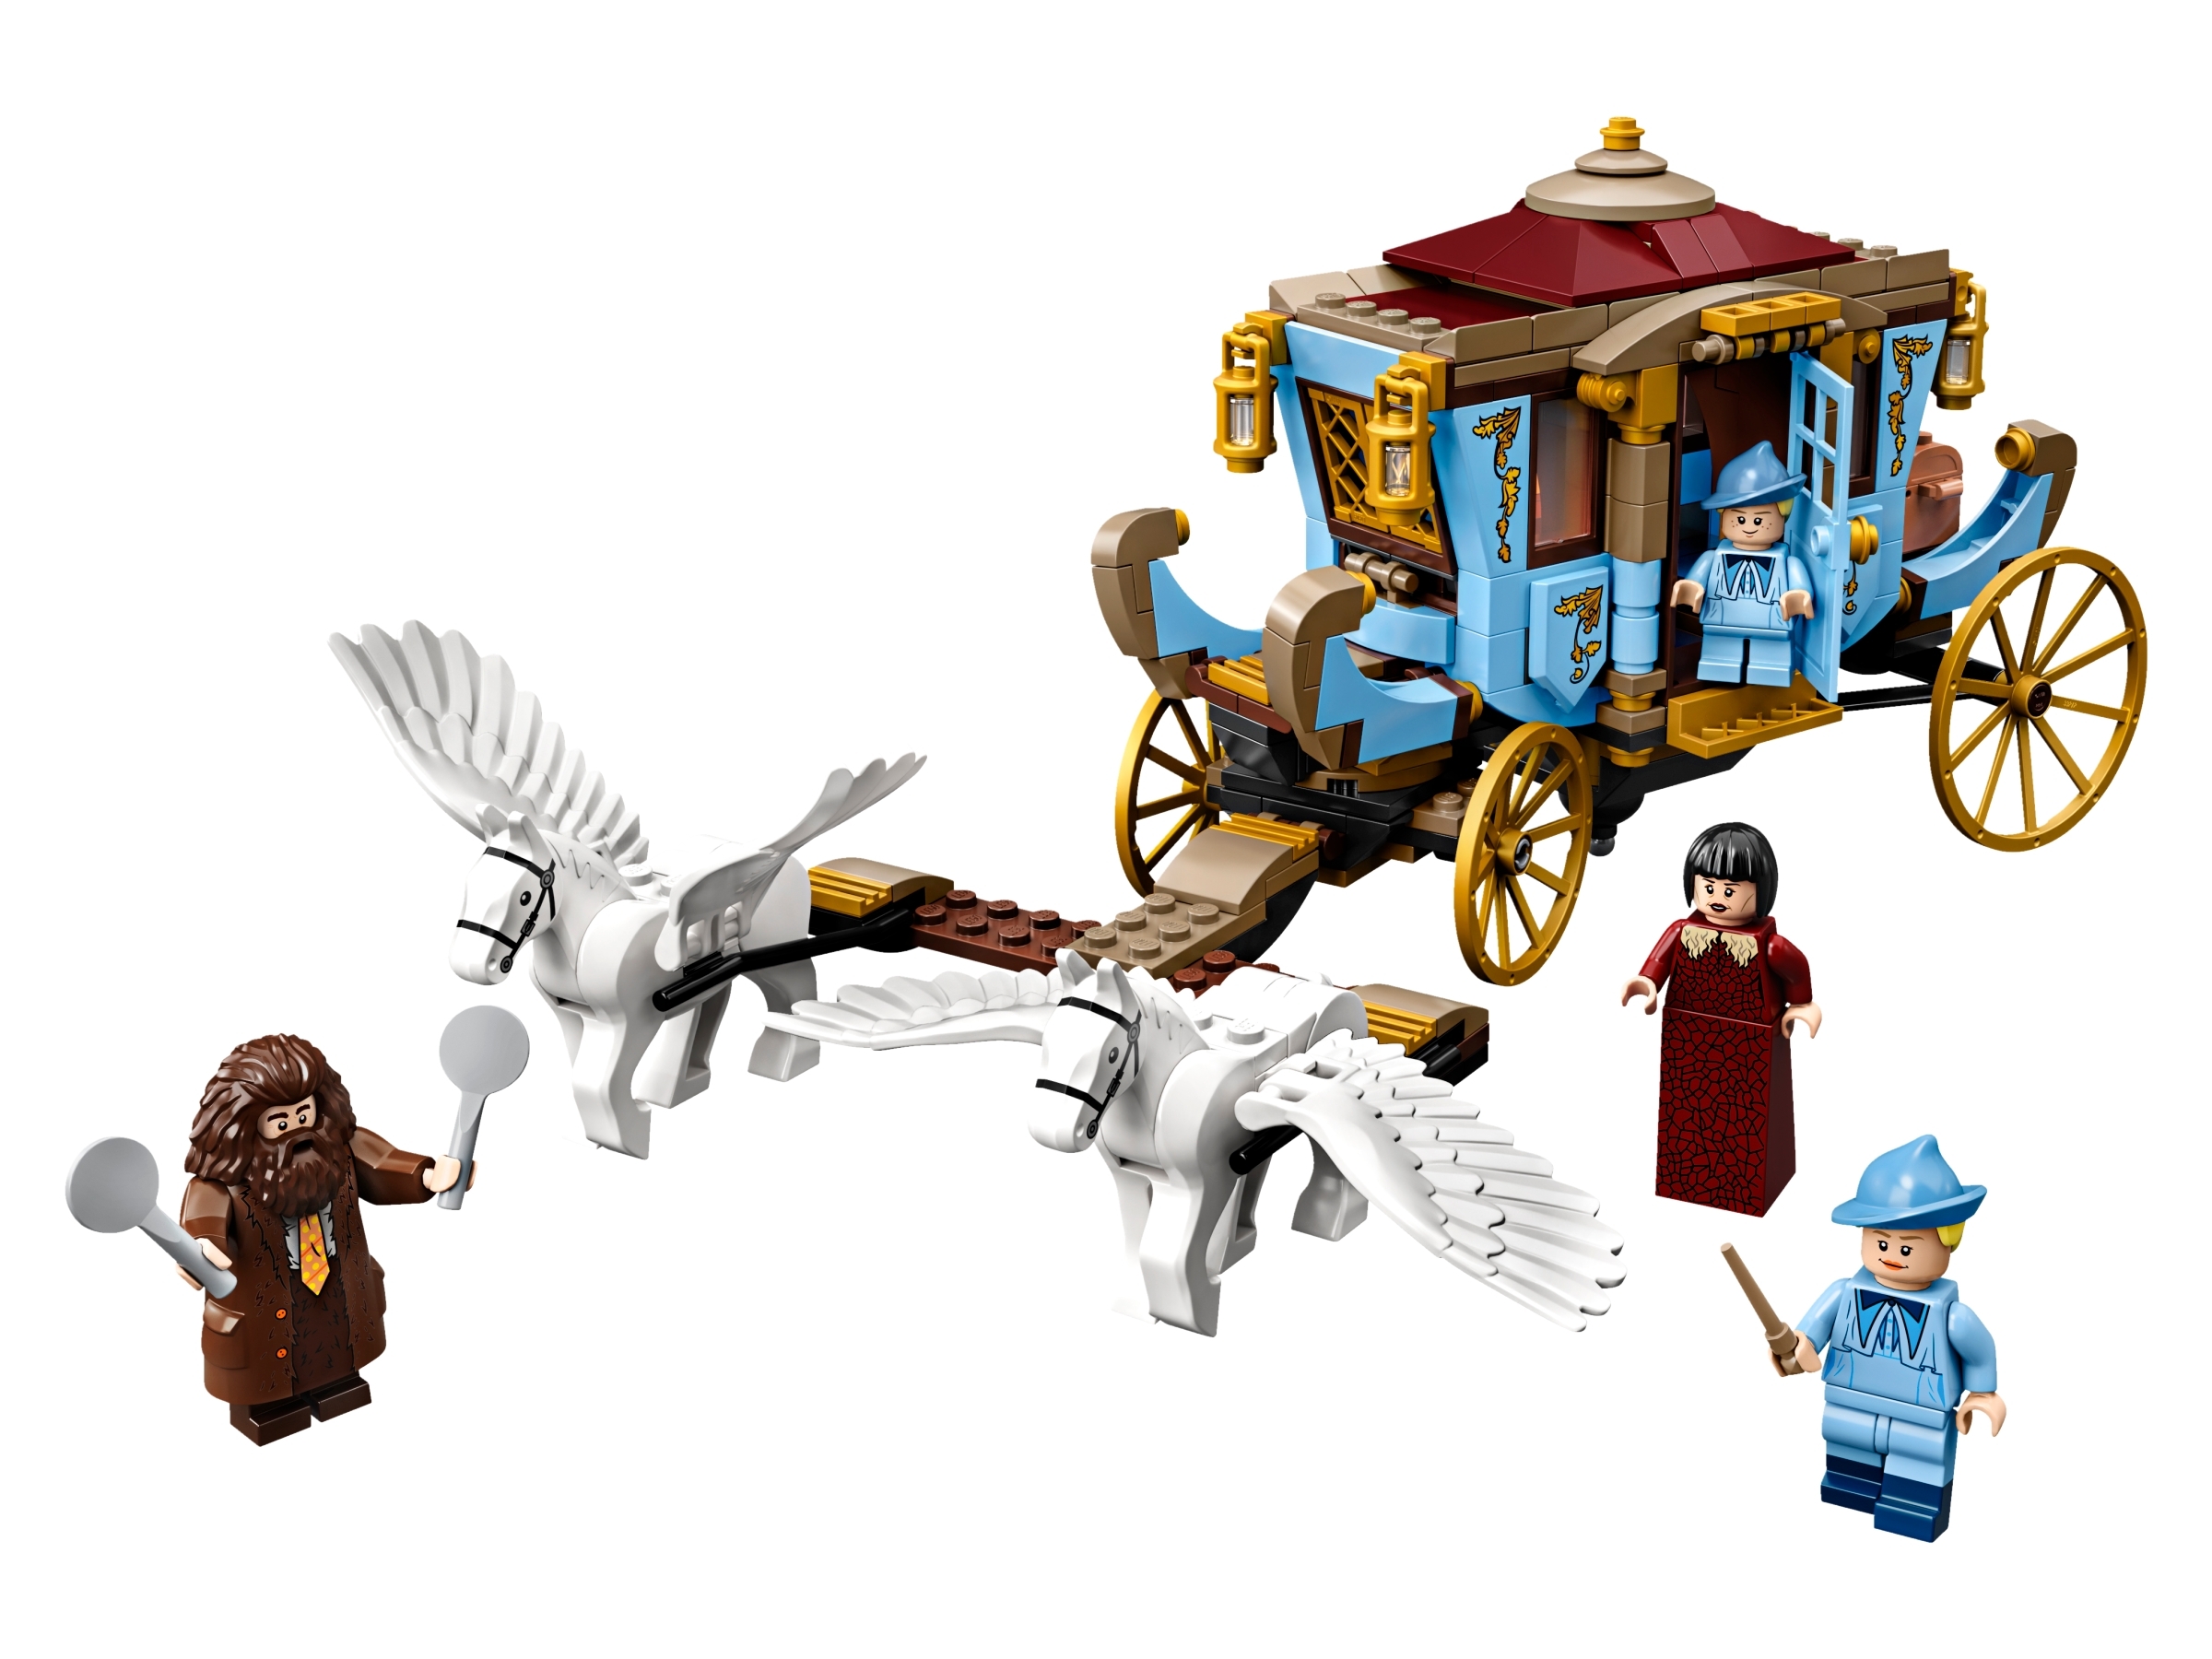 Carruagem e Trestálio de Hogwarts Lego Harry Potter - Fátima Criança